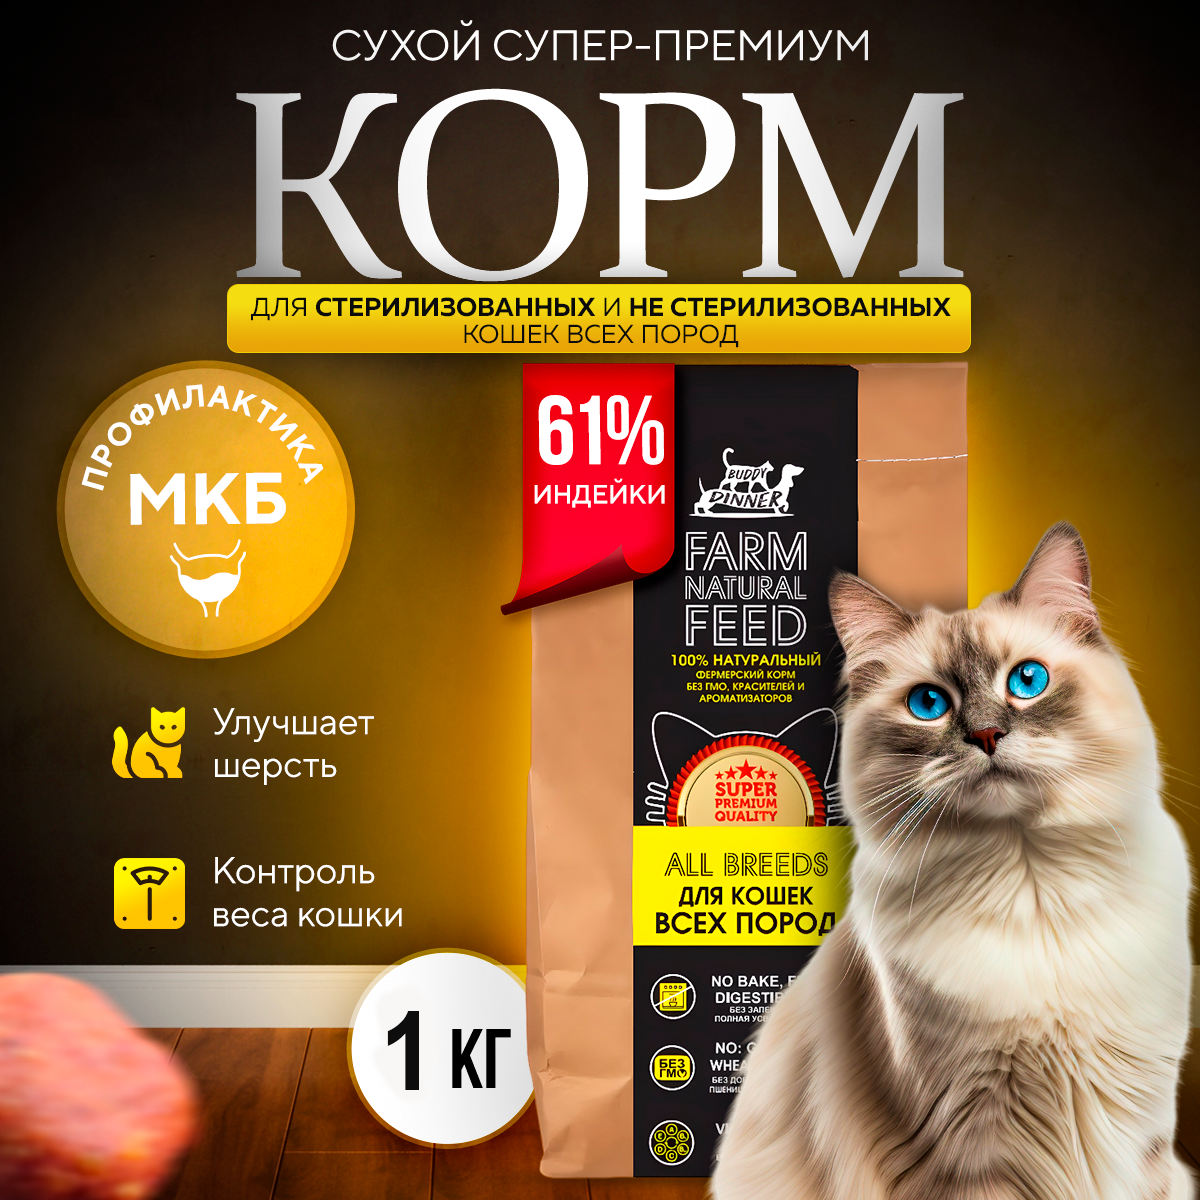 Сухой корм BUDDY DINNER Gold Line для кошек всех пород Супер премиум класса, гипоаллергенный,100 % натуральный состав, с индейкой, 1 кг